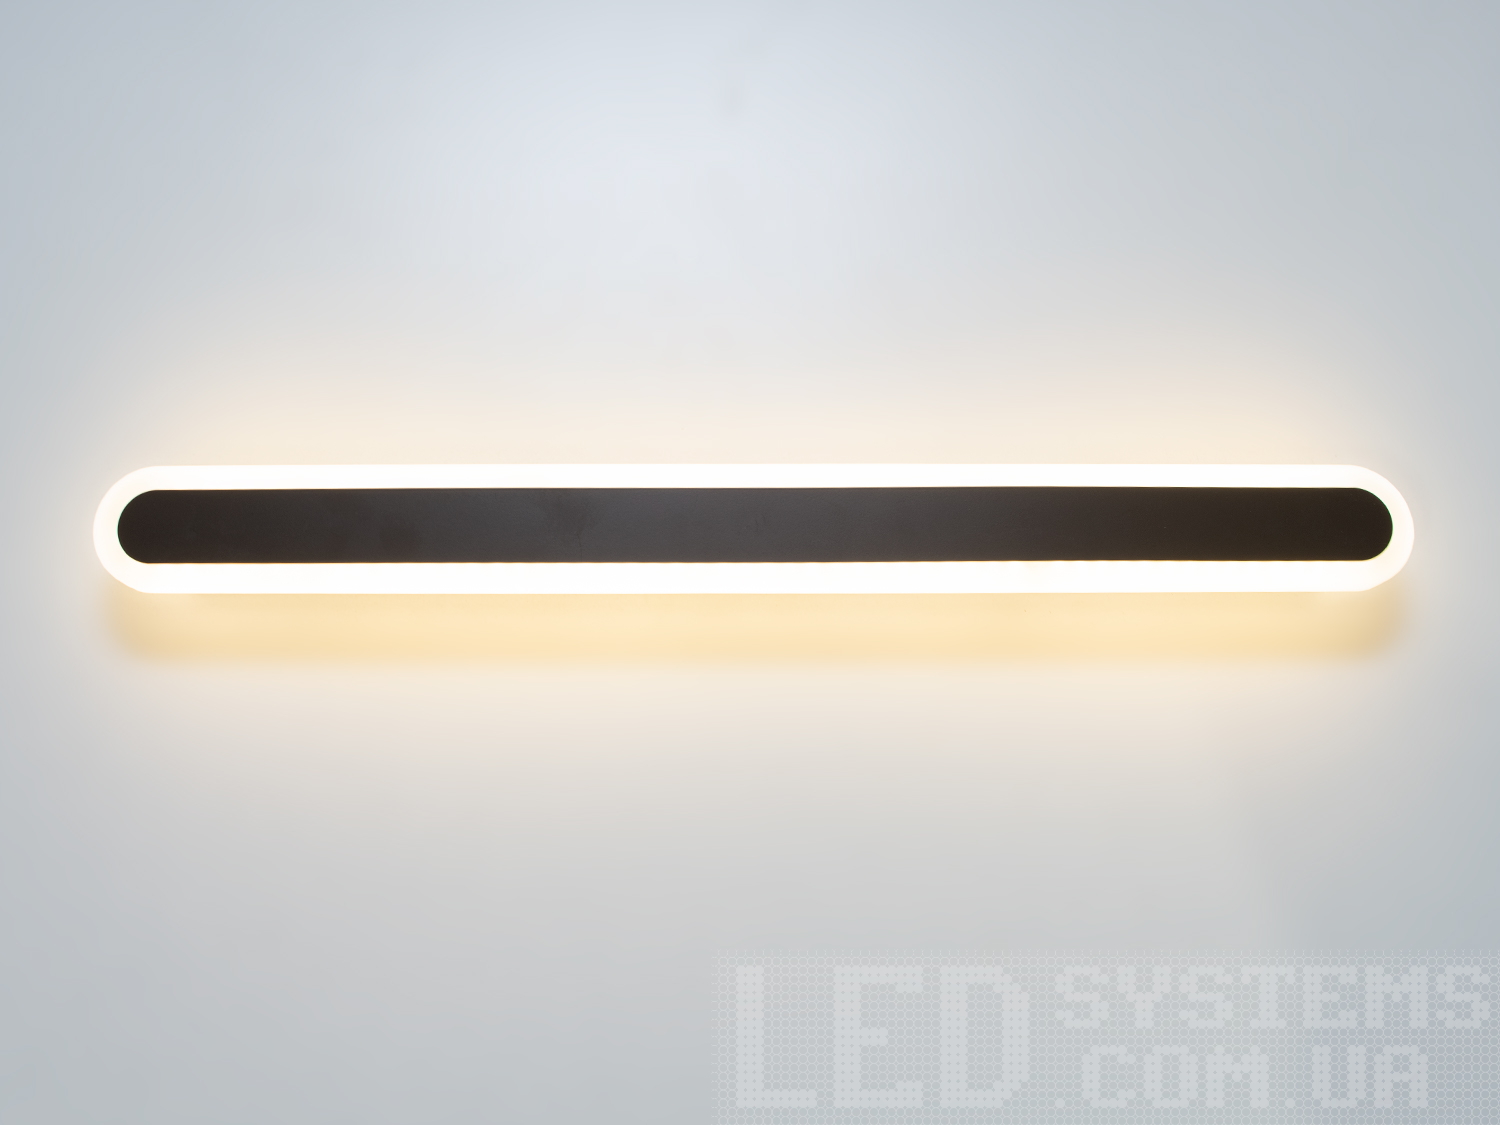 Світлодіодний світильник-бра на 30W відрізняється своєю унікальністю та сучасним дизайном. Він представляє собою елегантну і лаконічну лінію світла, яка ідеально підходить для створення чистого освітлення в будь-якому просторі, будь то спальня або кабінет. Його чисті, прямі лінії і мінімалістична естетика роблять його вишуканим доповненням до сучасного інтер'єру.
Світильник-бра складається з довгої світлодіодної панелі, обрамленої тонкою акриловою обідкою, що надає йому витонченого зовнішнього вигляду. Металева основа світильника має ненав'язливий чорний матовий колір, що контрастує з яскравістю світлодіодів, створюючи візуальний інтерес і глибину. Відсутність видимих кріплень і кабелів посилює враження легкості та плавності дизайну.
Освітлення від цього світильника не мерехтить, що робить його безпечним для очей і забезпечує комфорт при його використанні протягом тривалого часу. Це особливо важливо, коли світильник використовується в якості додаткового джерела світла в кабінеті або як нічне освітлення в спальні.
Великий термін використання є однією з ключових переваг світлодіодних світильників, і цей бра не є винятком. Його світлодіоди розраховані на довгий термін служби, забезпечуючи надійне та енергоефективне освітлення, що знижує потребу в частій заміні світлодіодної стрічки і допомагає економити витрати на електроенергію.
Світильник-бра може ефективно доповнити будь-який інтер'єр, від класичного до ультрамодерного, додавши стрункість та елегантність своїм обрисам. Його простий, але ефектний дизайн робить його ідеальним варіантом для тих, хто прагне створити спокійну, але стильну атмосферу.
Коли мова заходить про покупку, цей світильник-бра також може бути доступним варіантом для тих, хто шукає якість за розумною ціною. Його вартість і якість роблять його привабливим вибором для широкого кола покупців, що шукають не лише функціональність, але й дизайнерську цінність у своїх освітлювальних рішеннях.
У підсумку, цей світлодіодний бра не просто освітлює простір, він приносить в нього стиль та досконалість, роблячи кожну стіну полотном для вираження сучасного мистецтва освітлення.